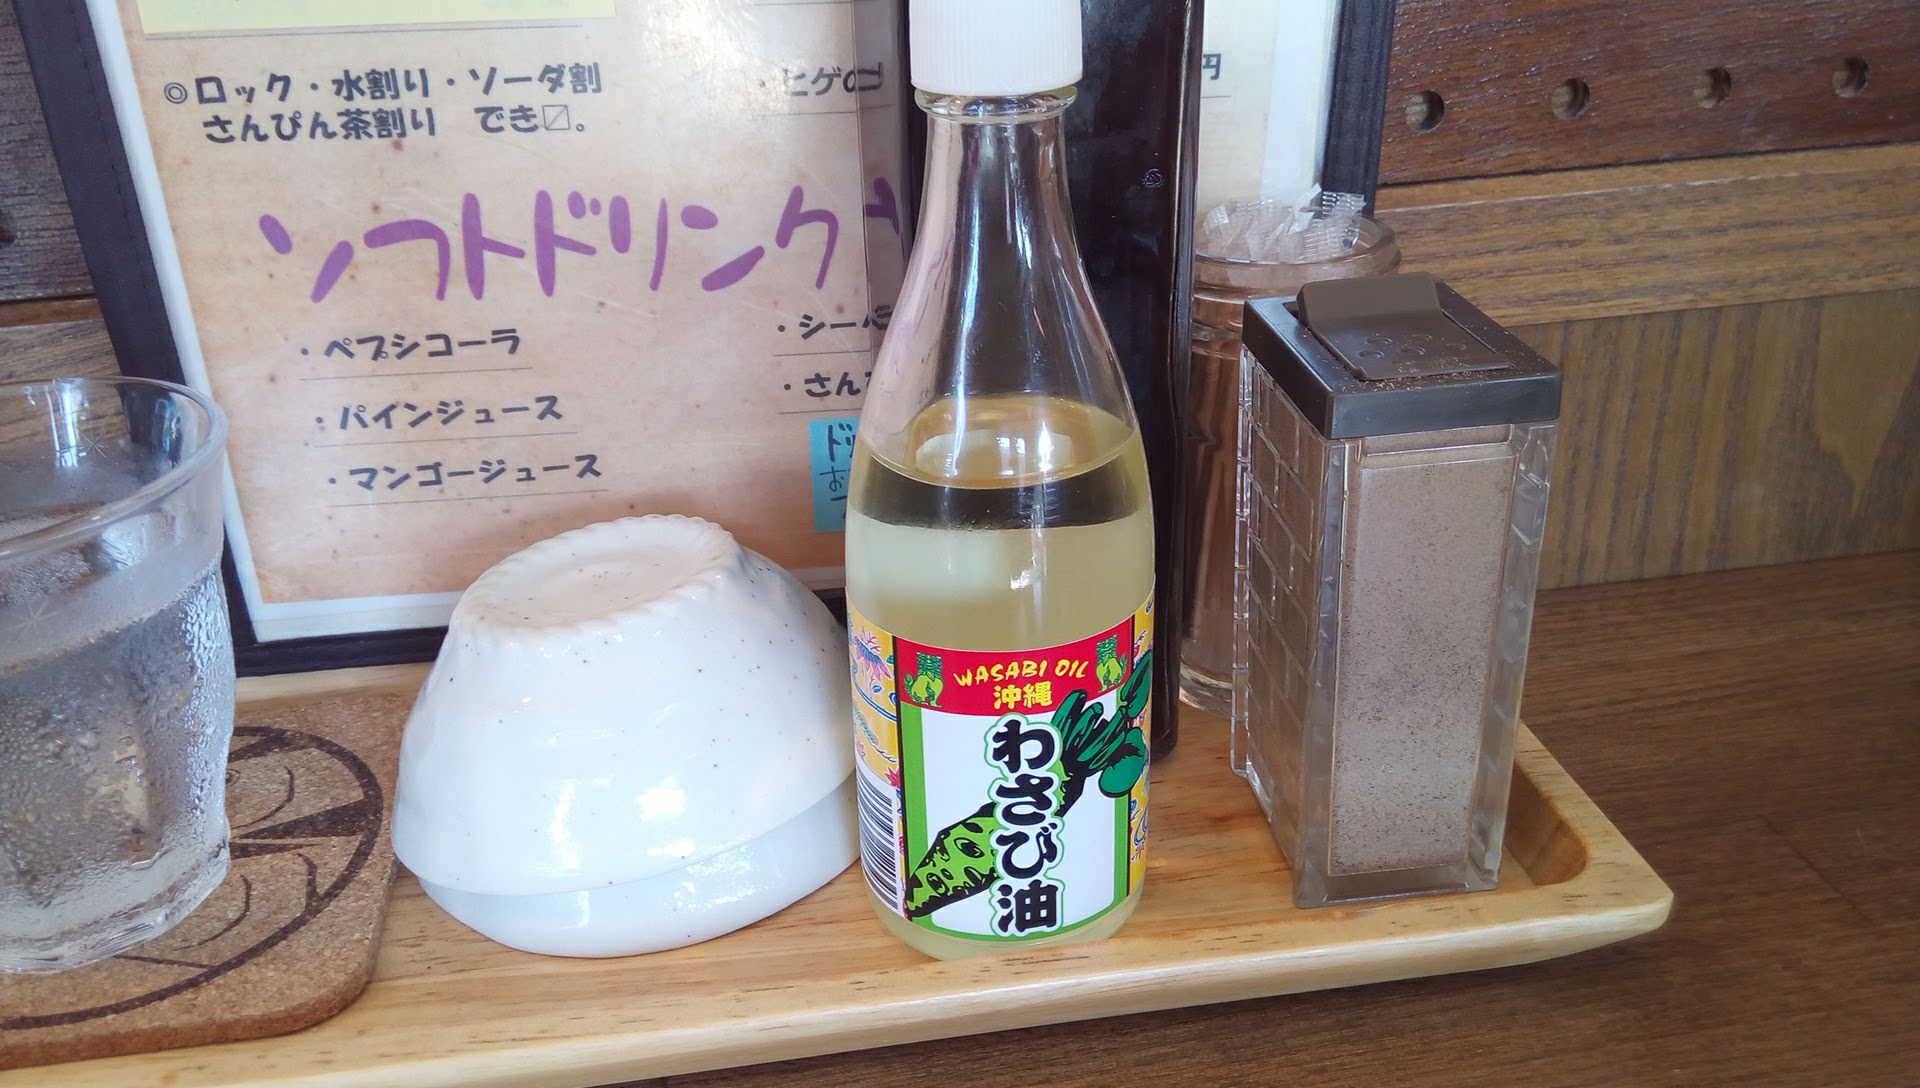 Wasabi oil